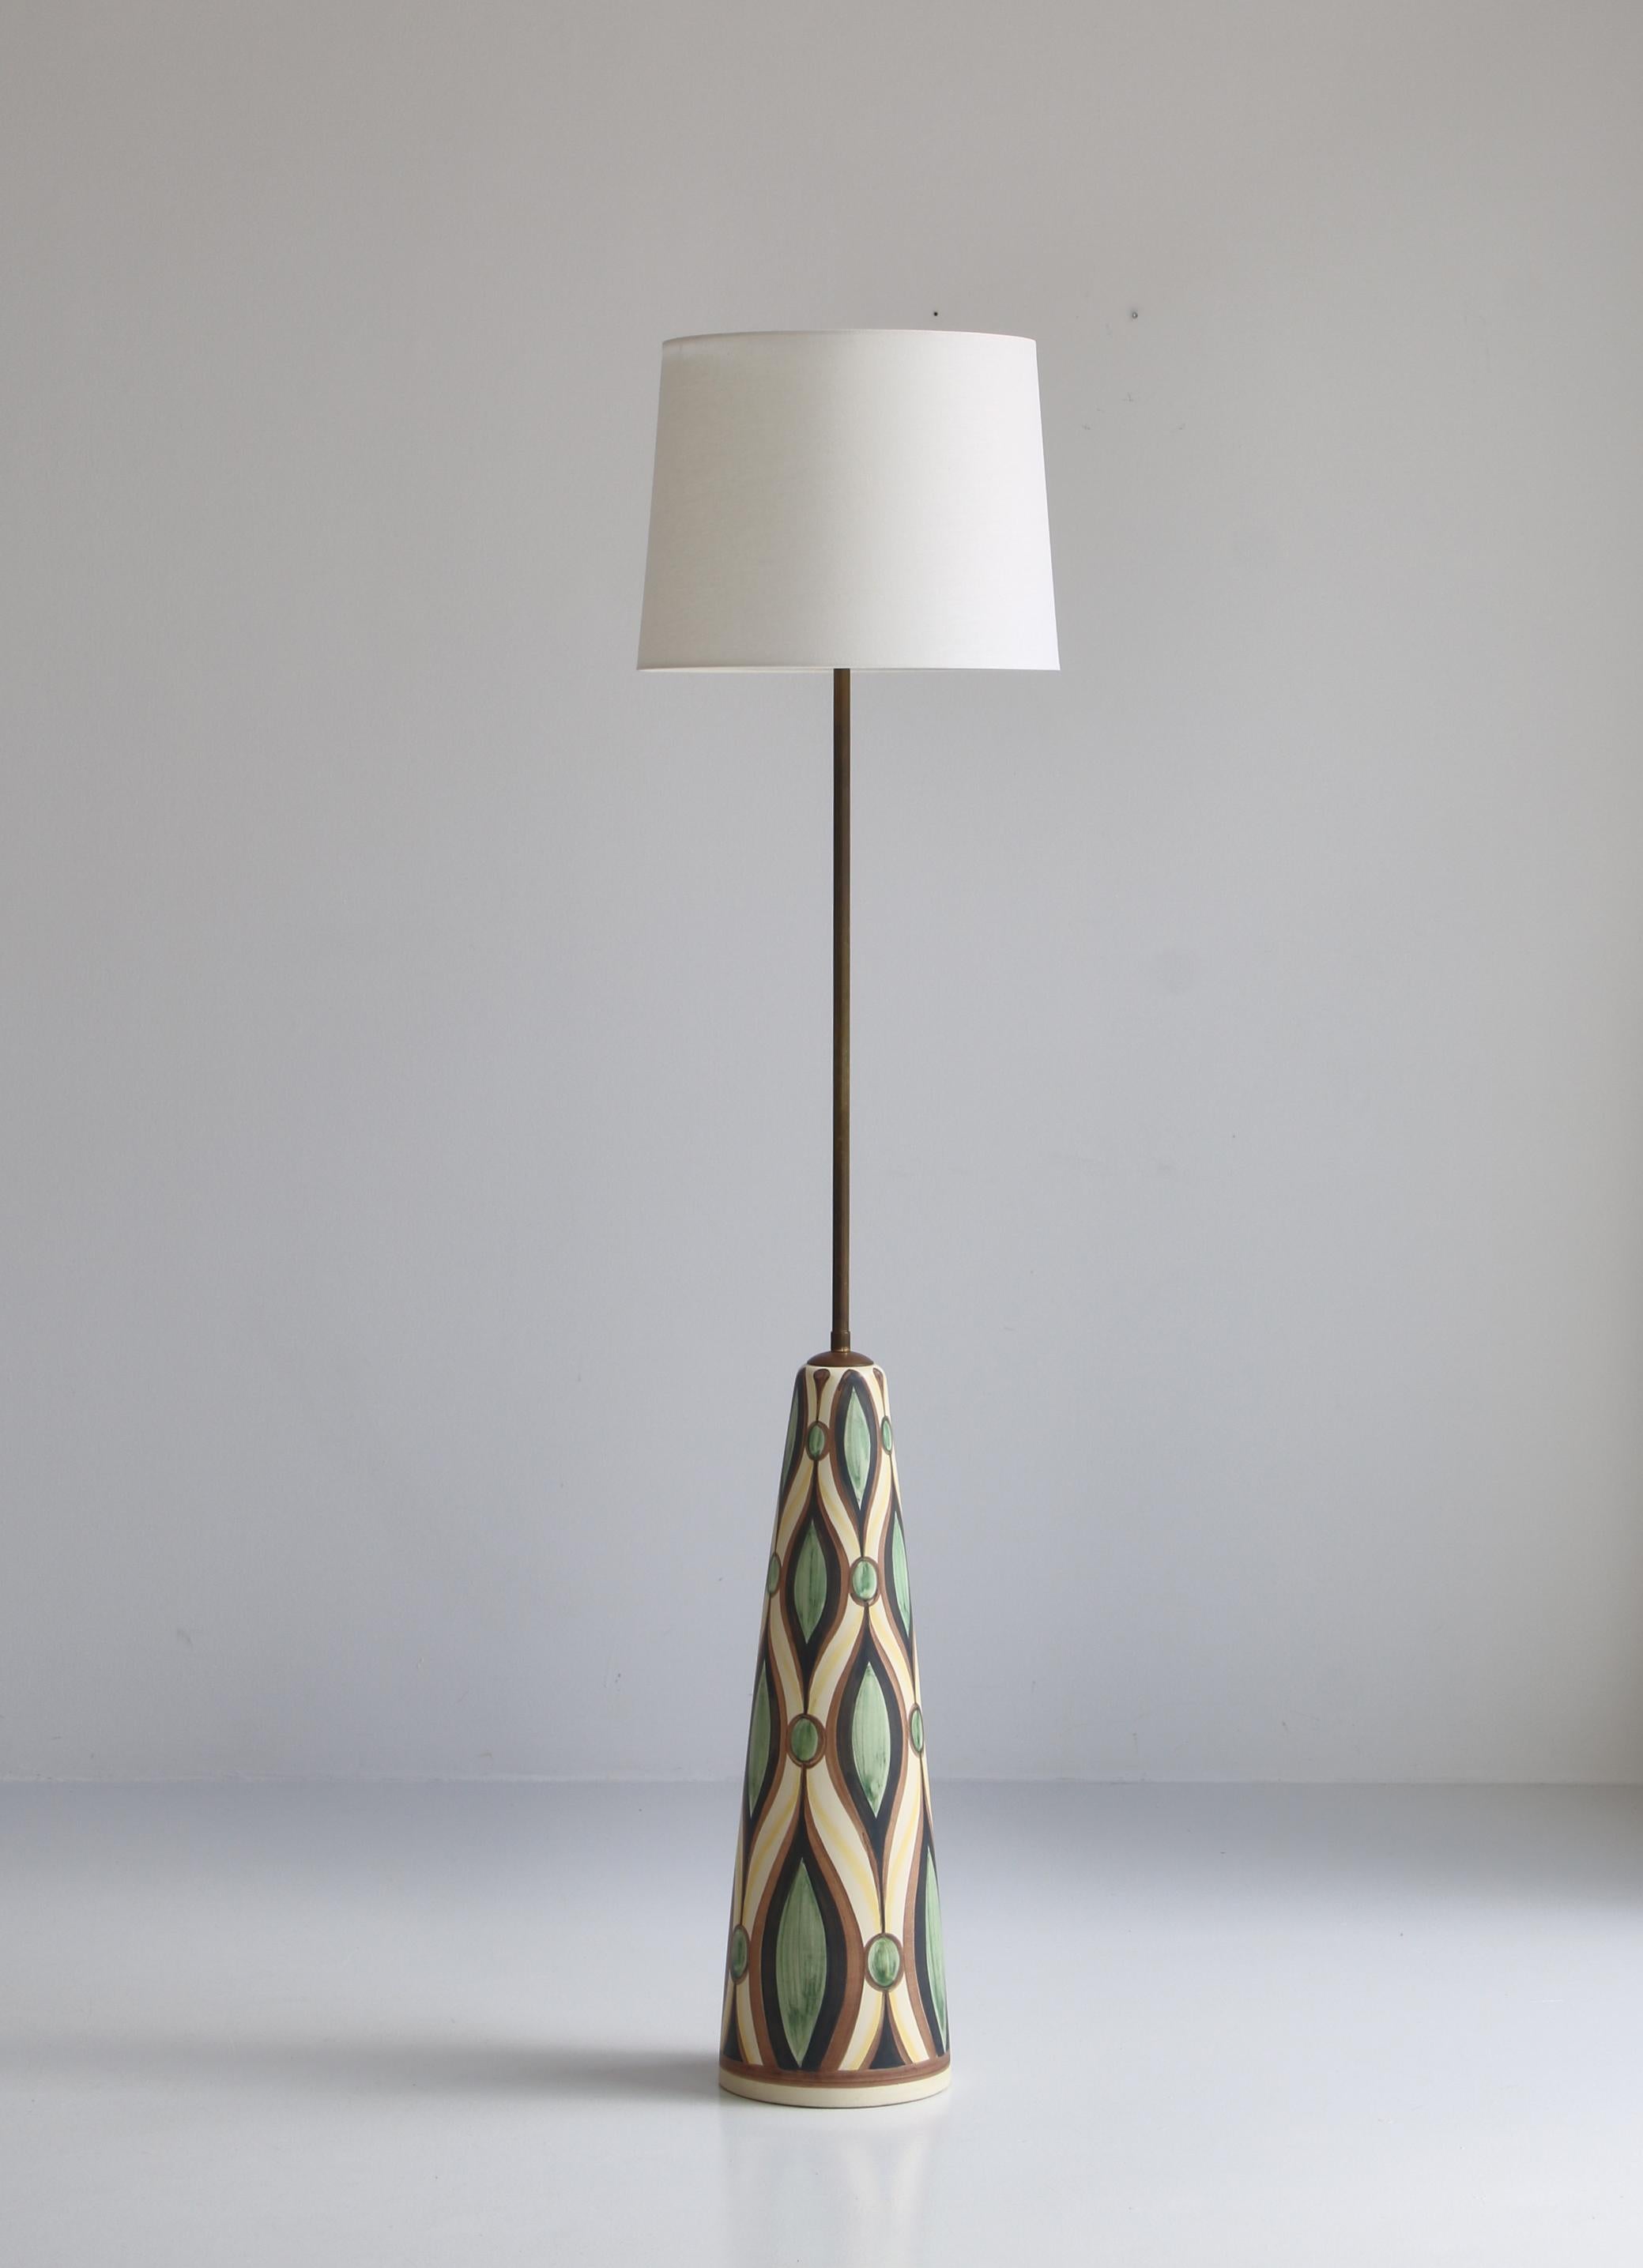 Scandinavian Modern Huge Ceramic Floor Lamp by Rigmor Nielsen for Søholm, 1960s, Danish Modern